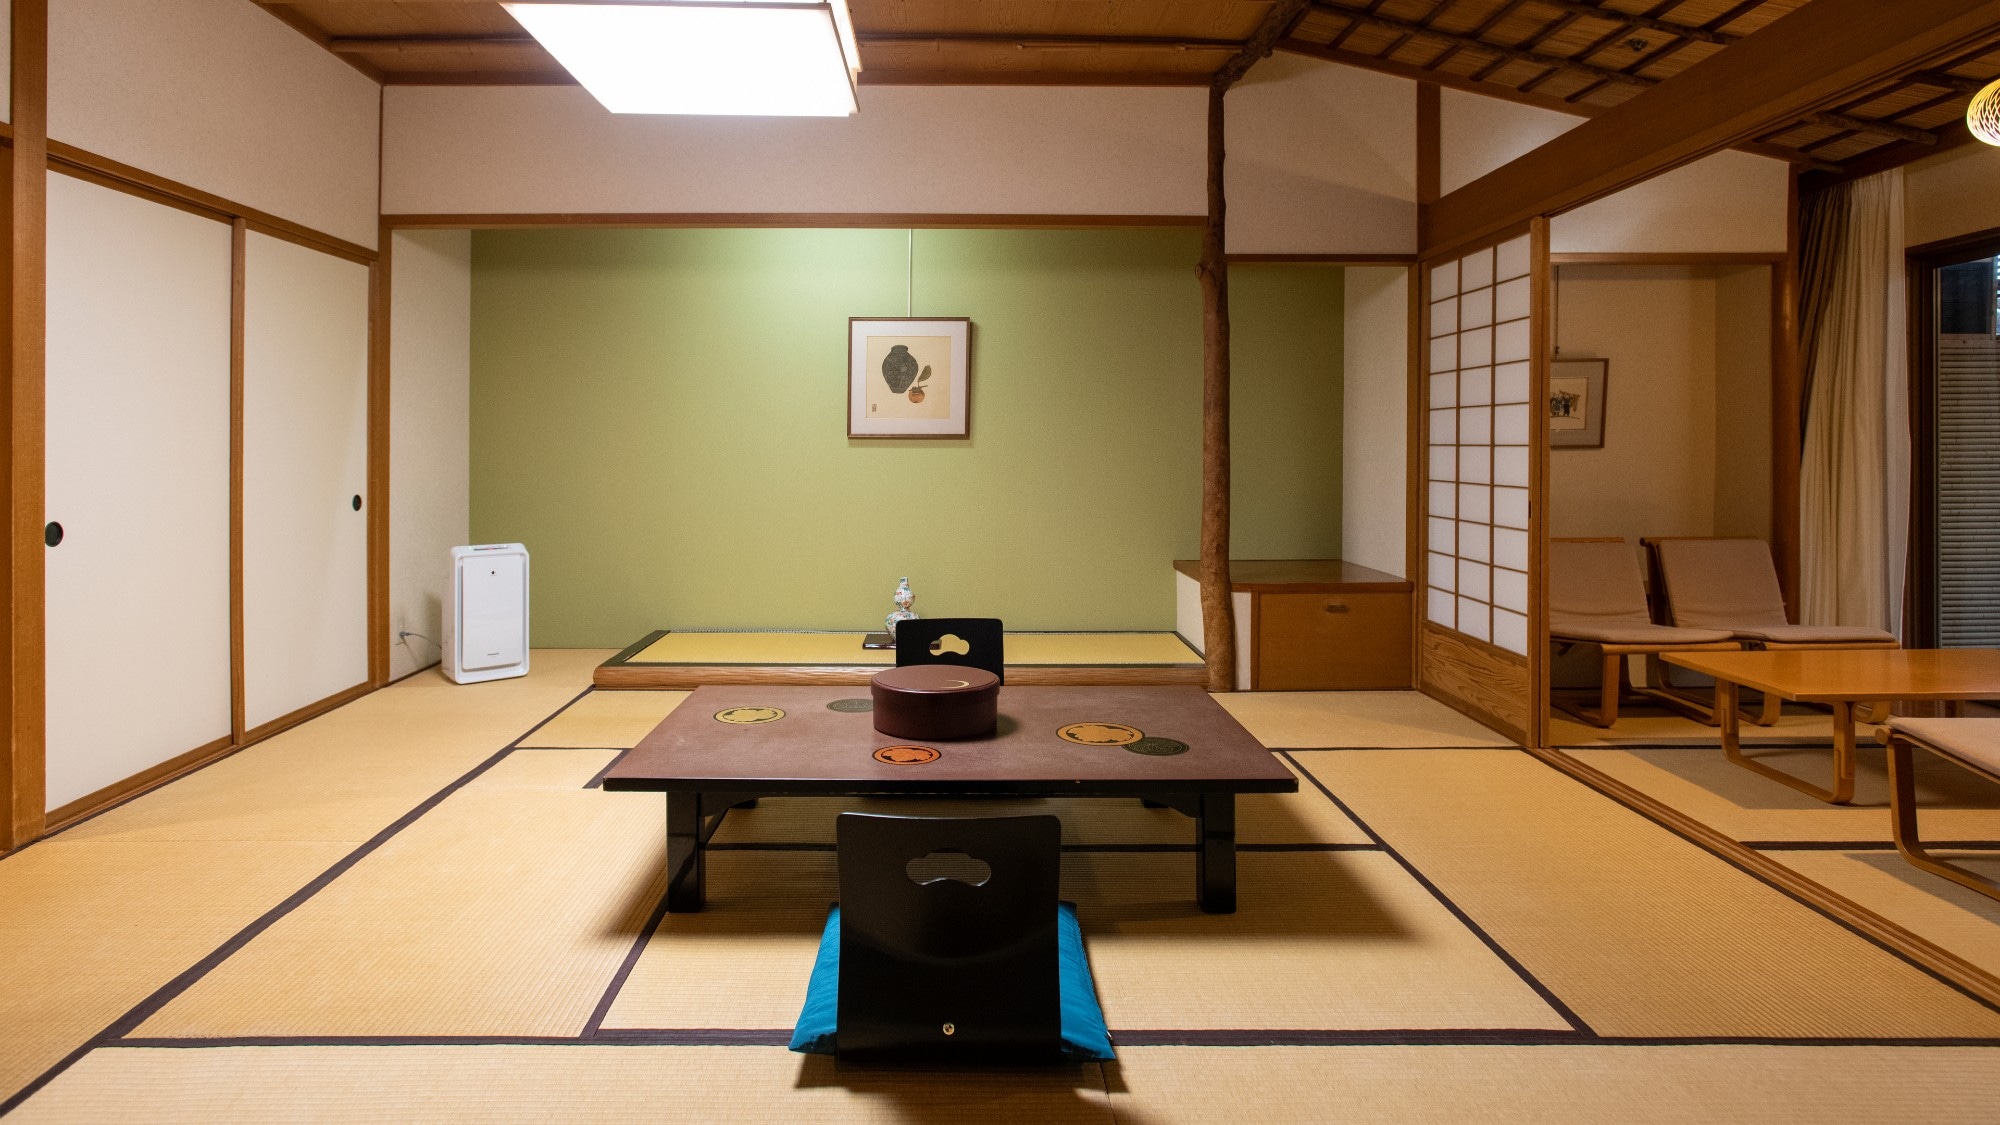 ห้องสไตล์ญี่ปุ่น 10 เสื่อทาทามิ (ความจุห้อง 1-4 คน) ห้องปลอดบุหรี่ * ตัวอย่าง